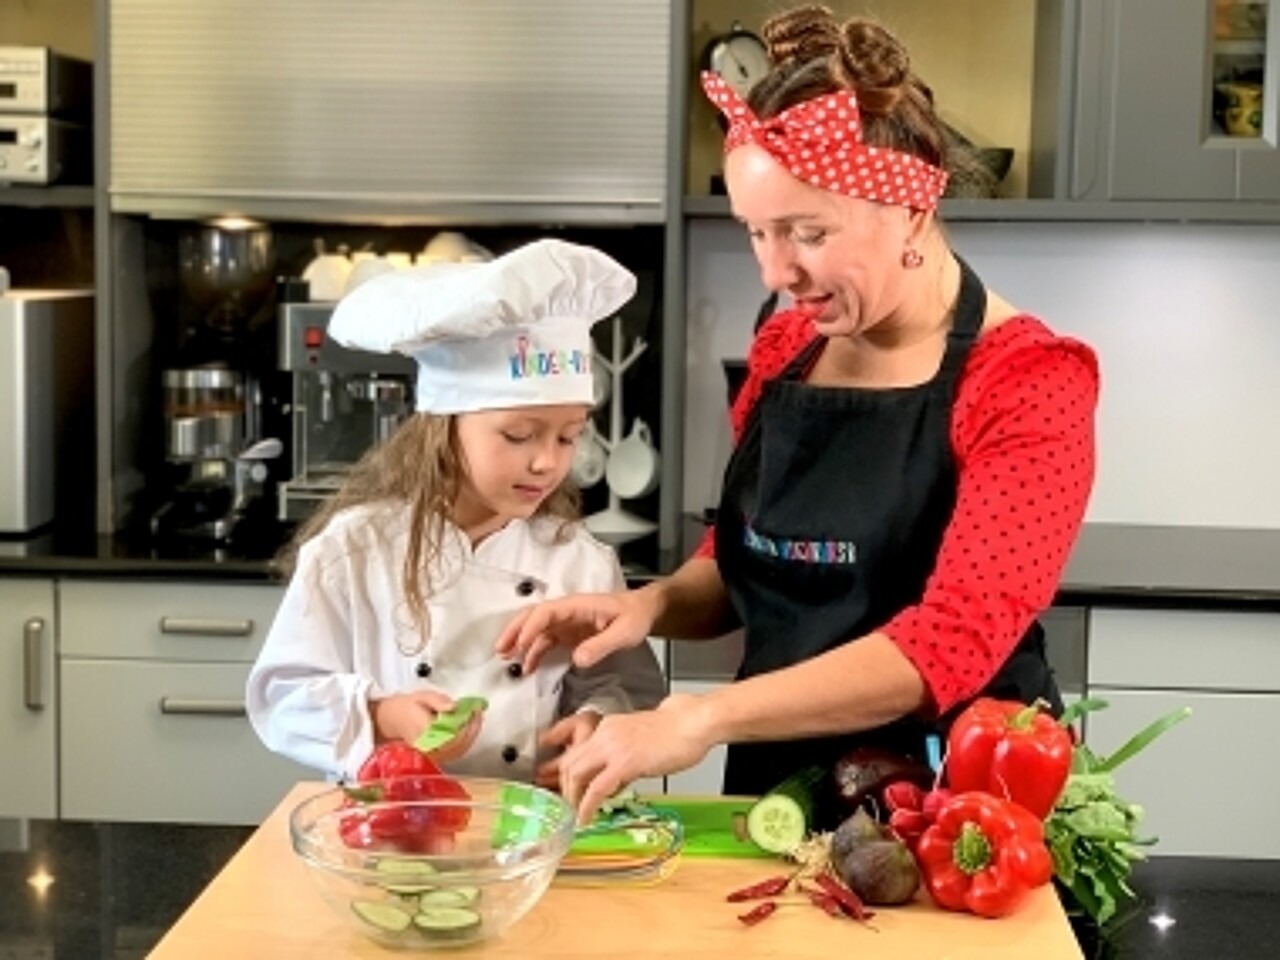 Frau Gueßbacher von kinder-kochkurs.com und ein Mädchen mit Kochmütze schnibbeln in der Küche Gemüse.